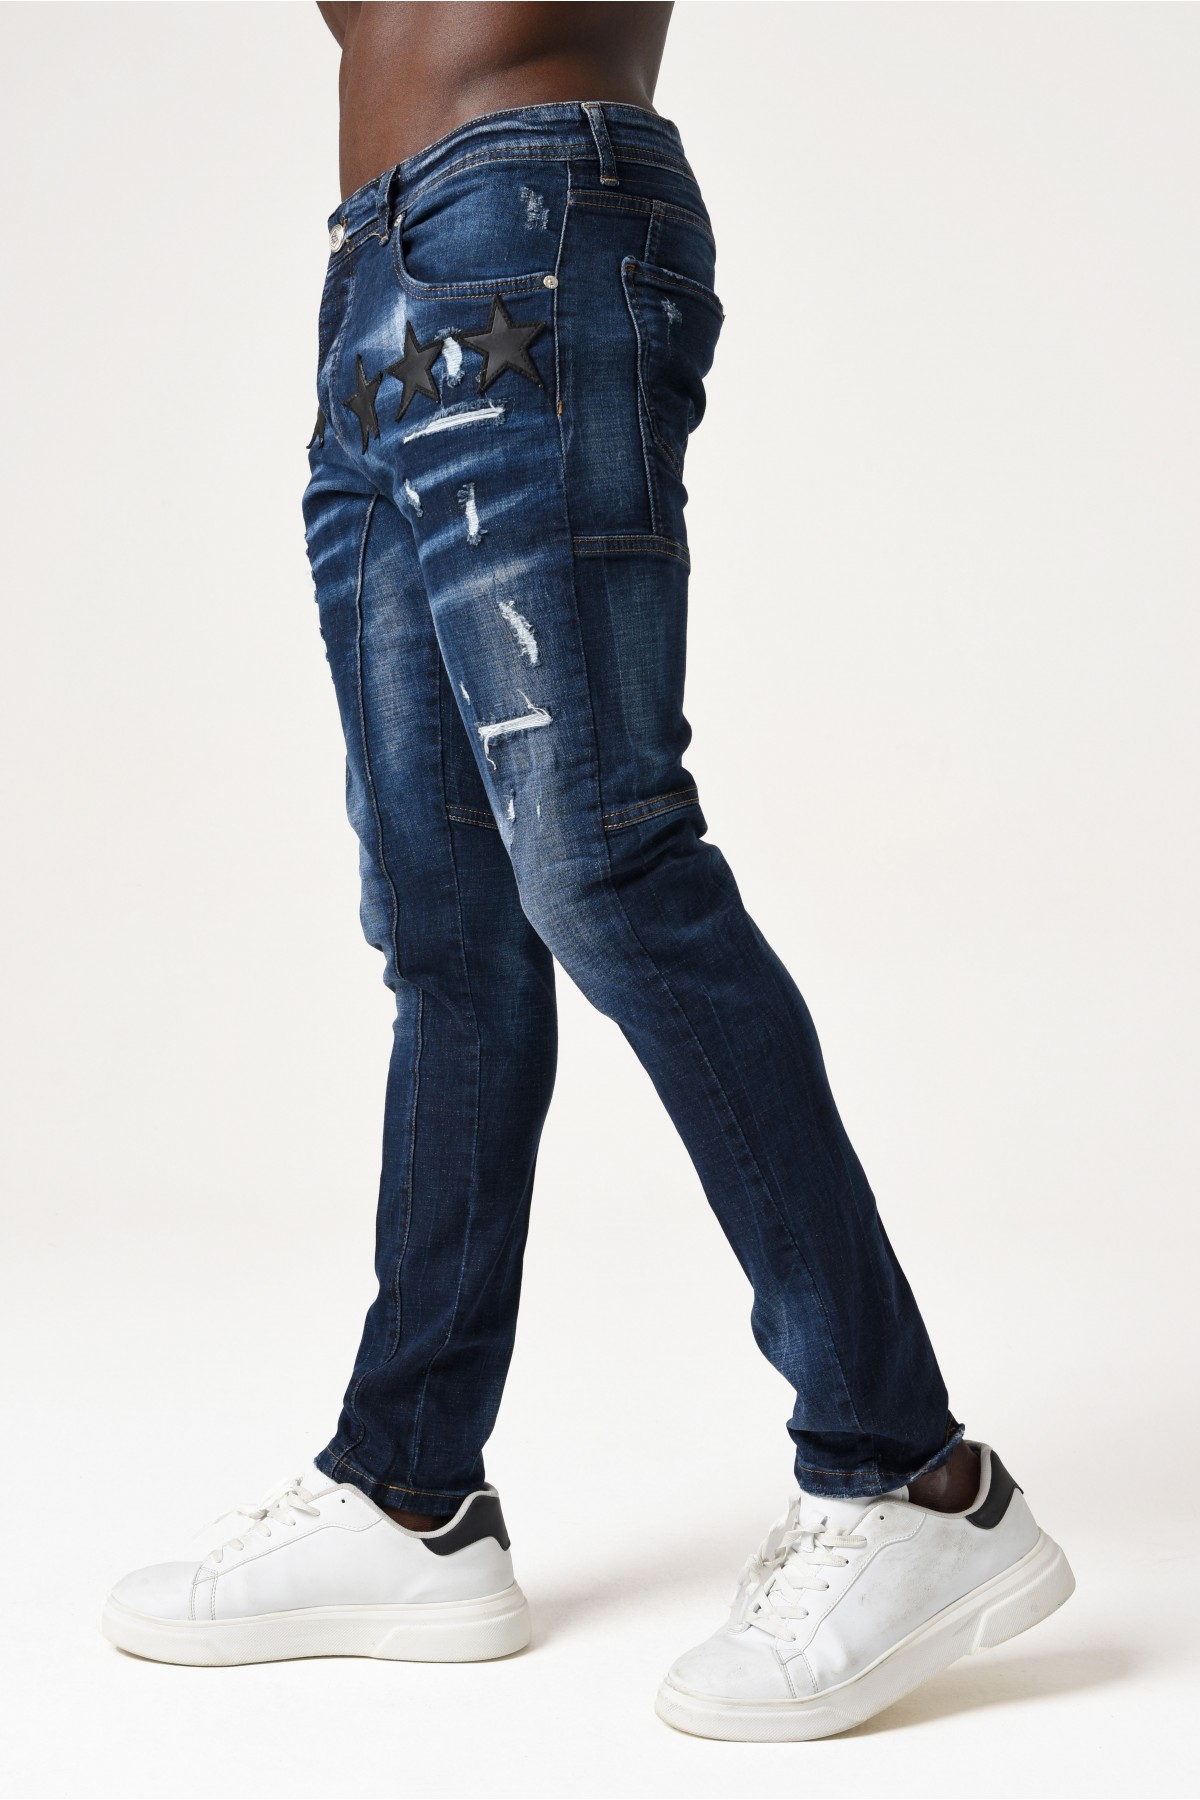 Erkek Denim Pantolon - Altılı Siyah Yıldız  - Orta Mavi